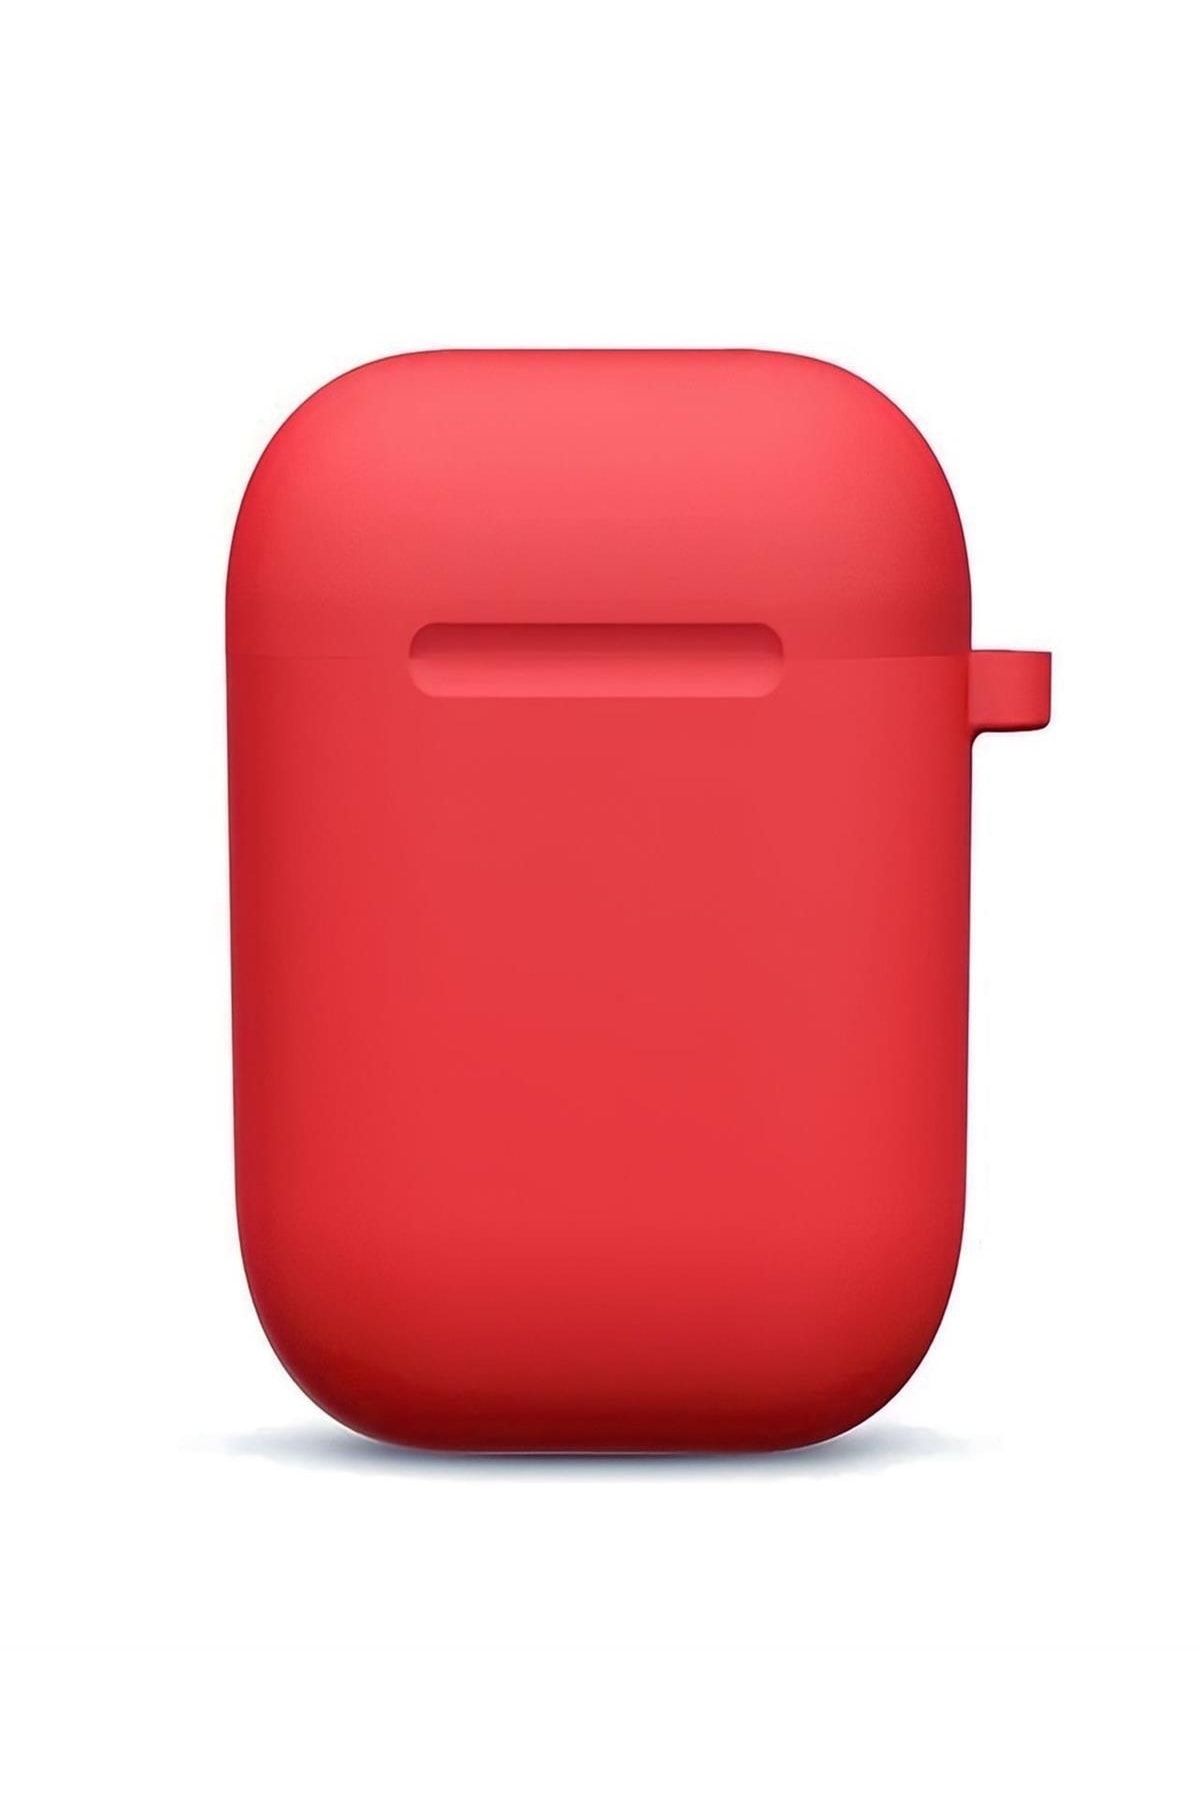 kılıfbenim Airpods Case - Red - Airpods 2nd Generation - Trendyol